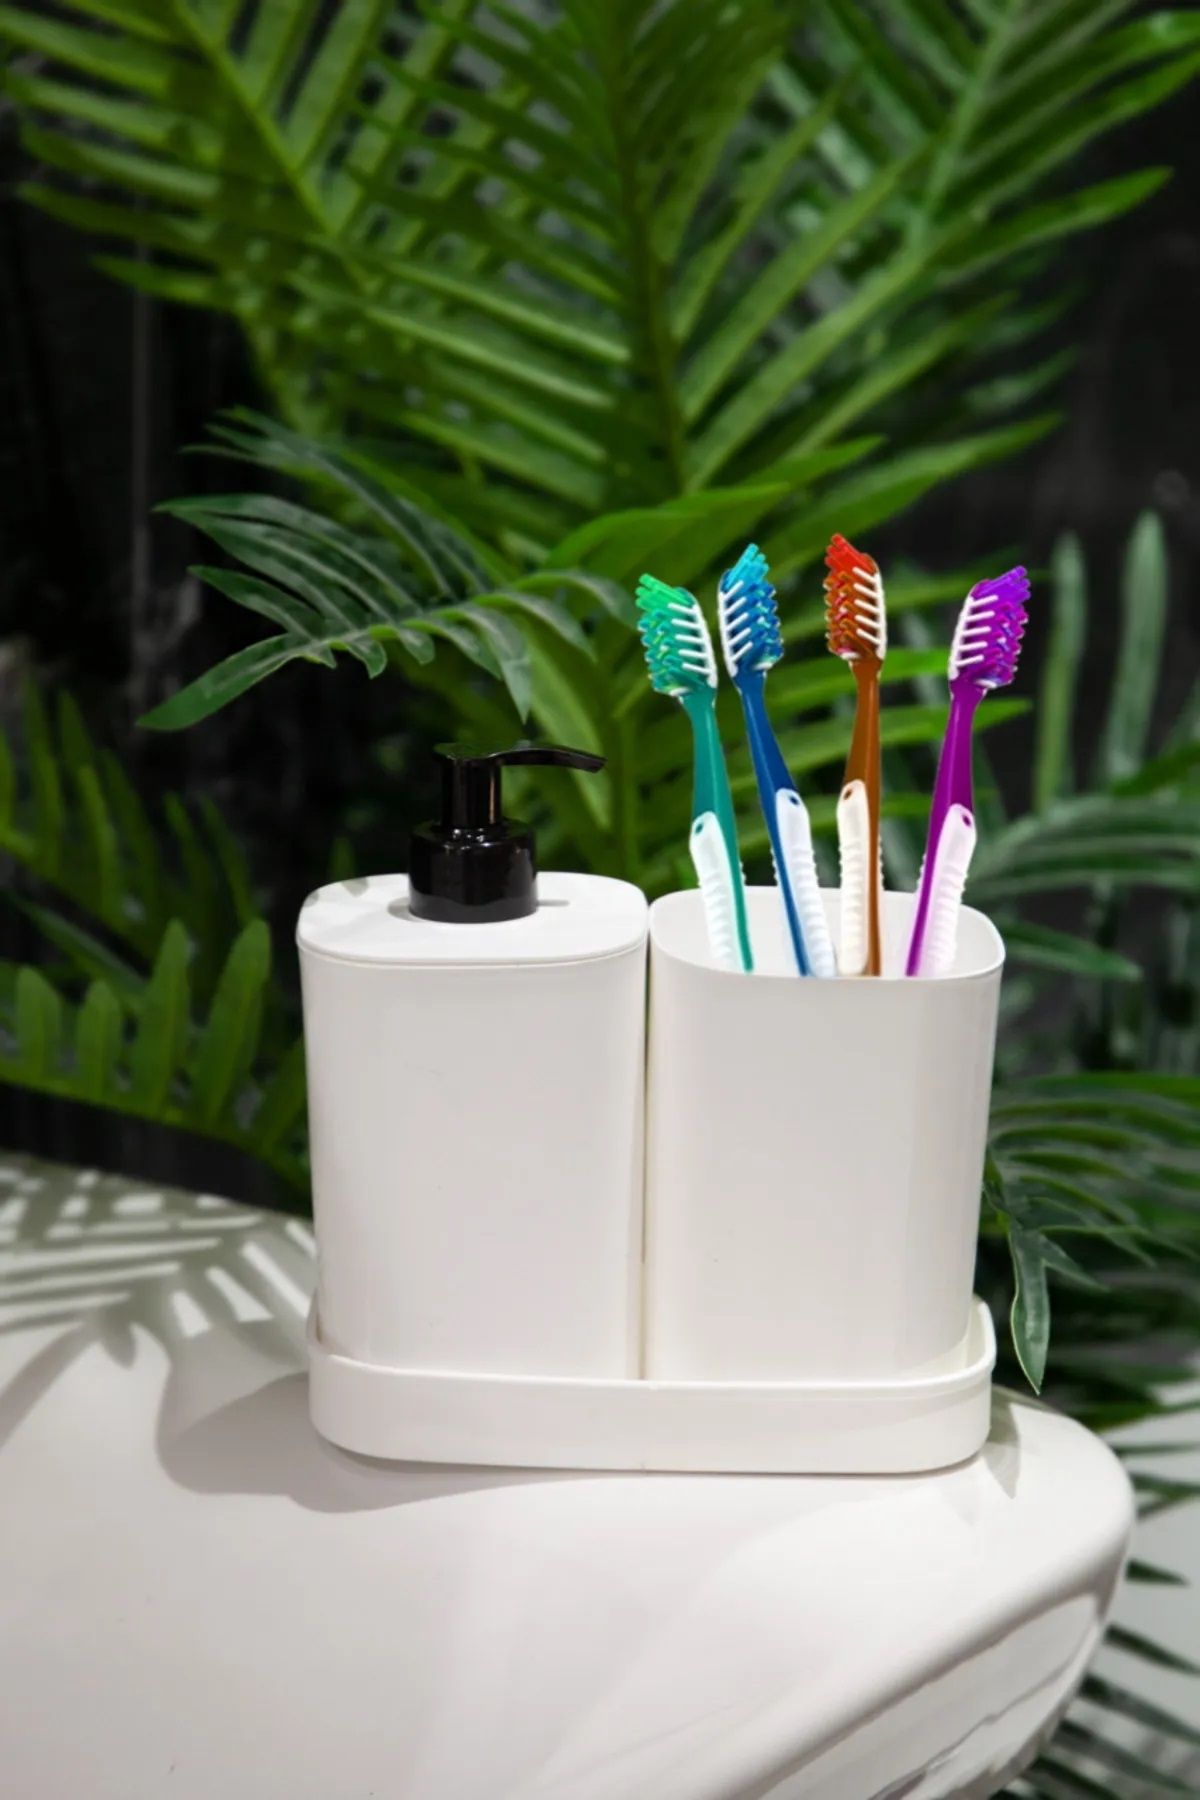 BRAMBLE LIFE Creative 3 Parça Beyaz Banyo Seti Sıvı Sabunluk Diş Fırçalık Süngerlik Hazneli Standlı Set